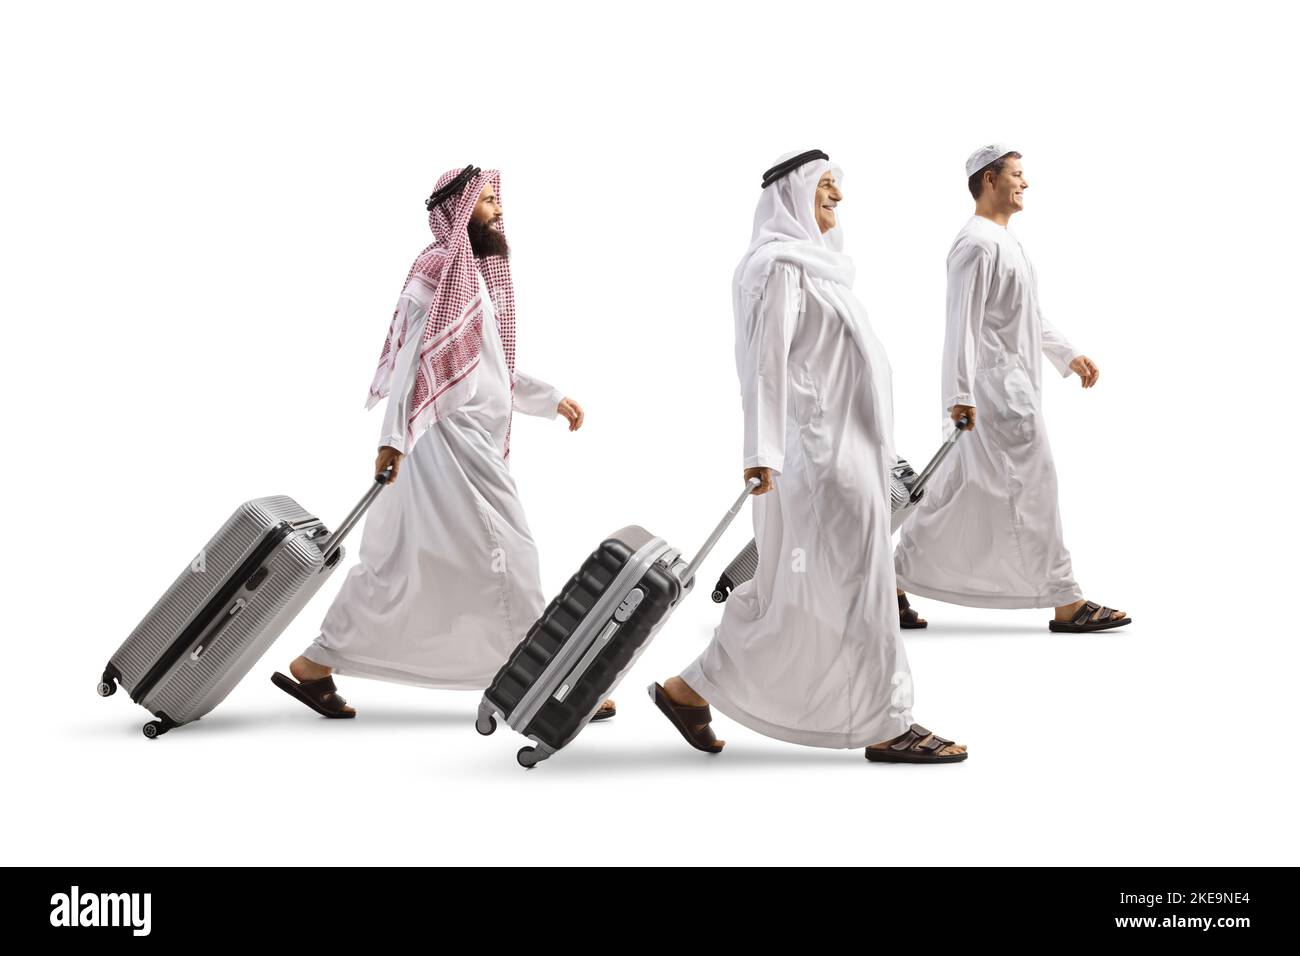 Uomini in abiti etnici arabi camminare e tirare valigie isolate su sfondo bianco Foto Stock